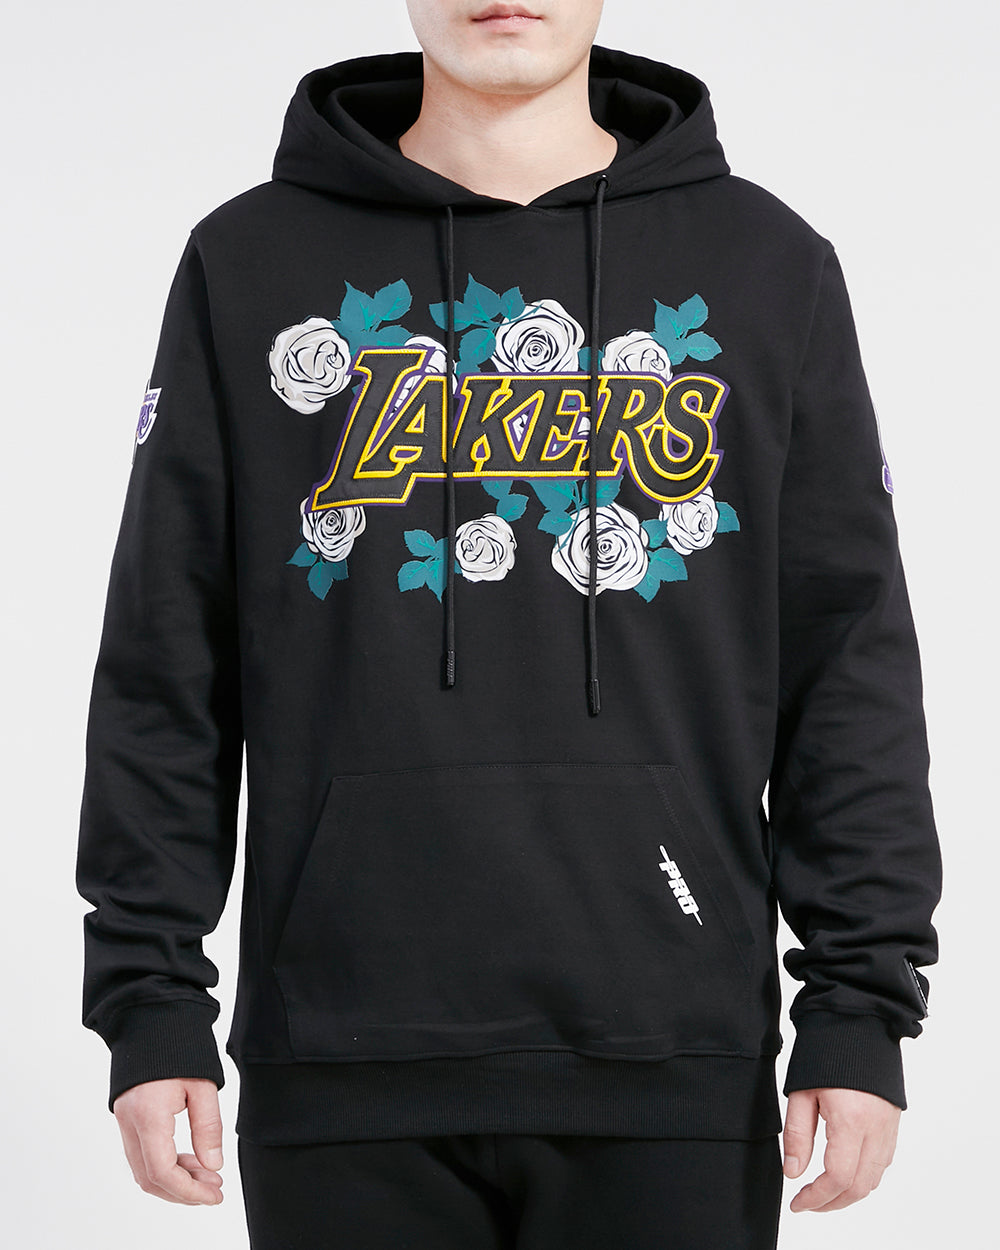 Los Angeles Lakers Club Men's Nike NBA Pullover Hoodie